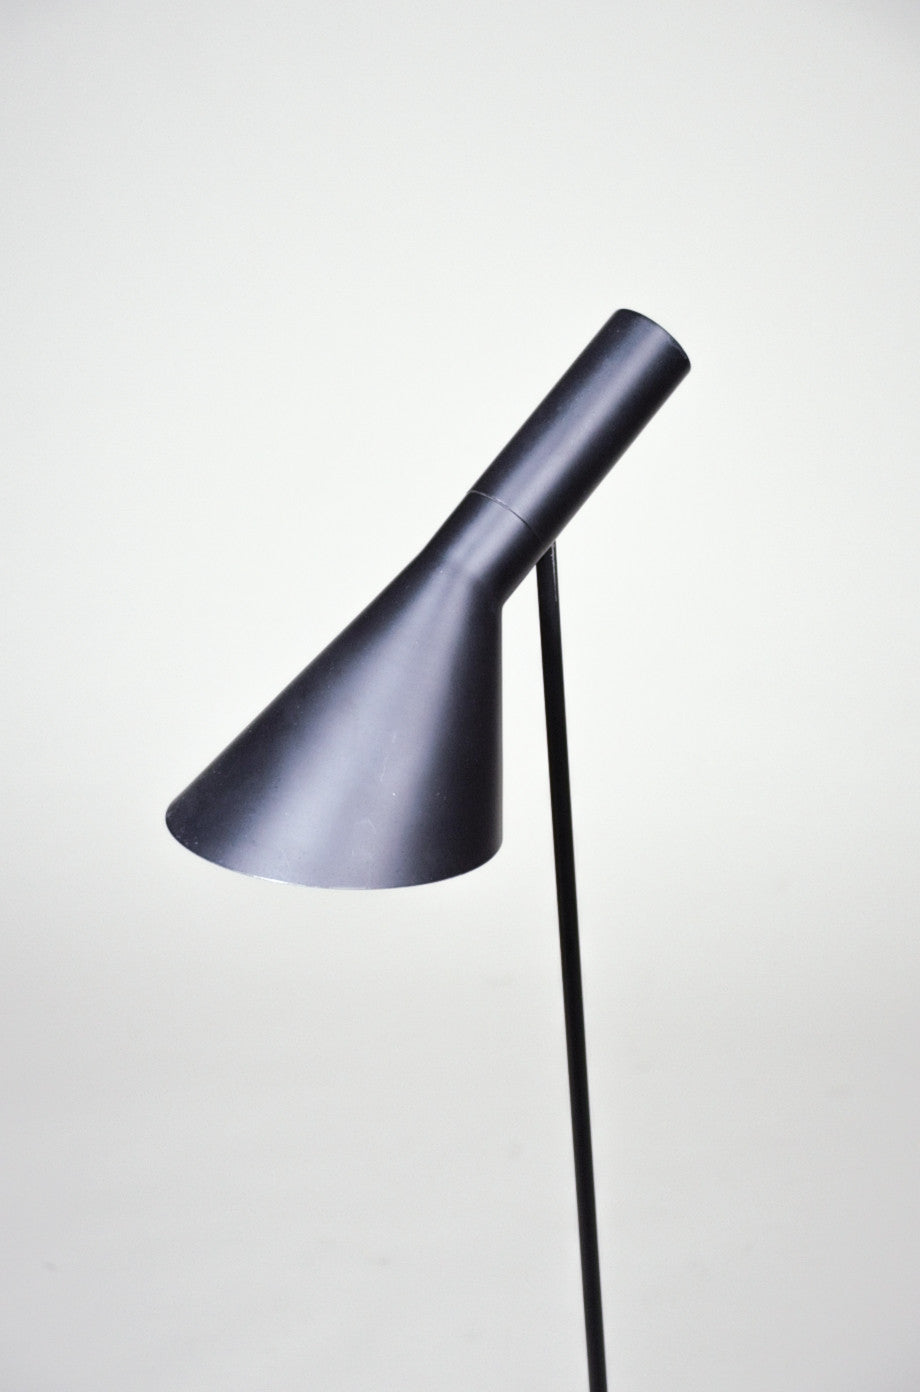 SOLD Louis Poulsen Arne Jacobsen AJ Floor Lamp 1960's Original